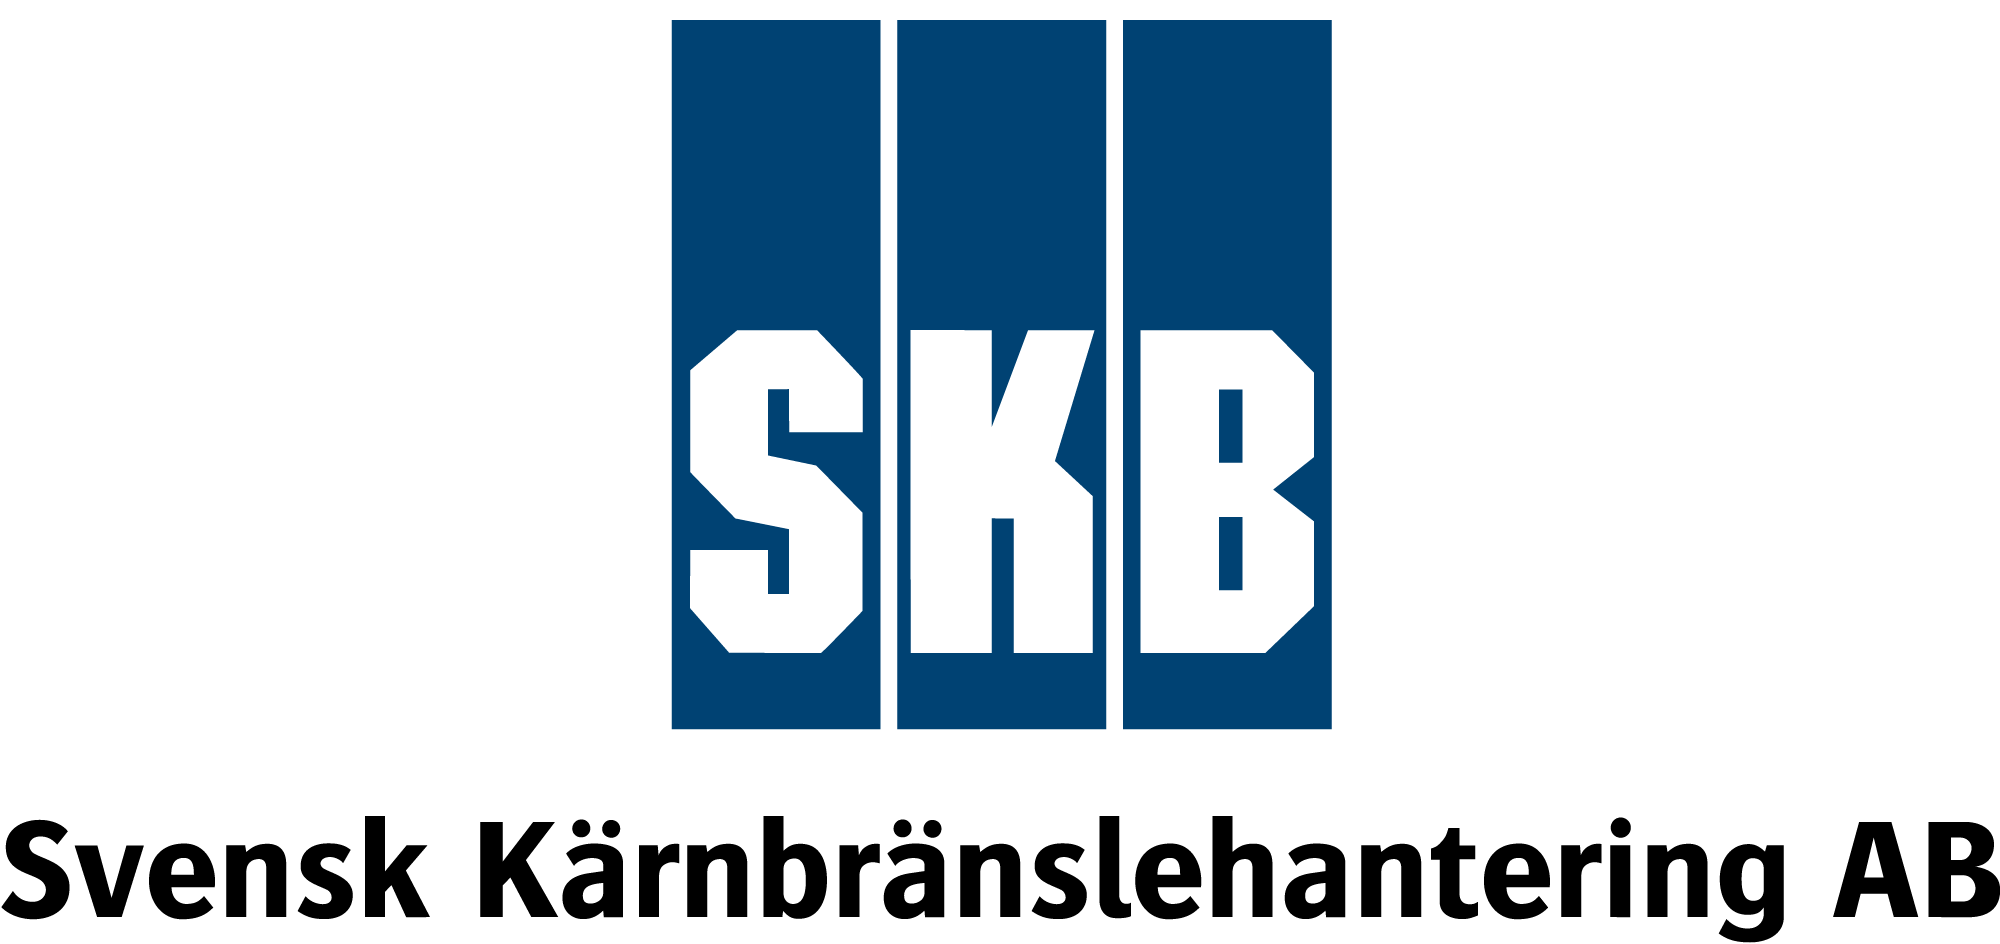 SKB (Svensk Kärnbränslehantering AB)